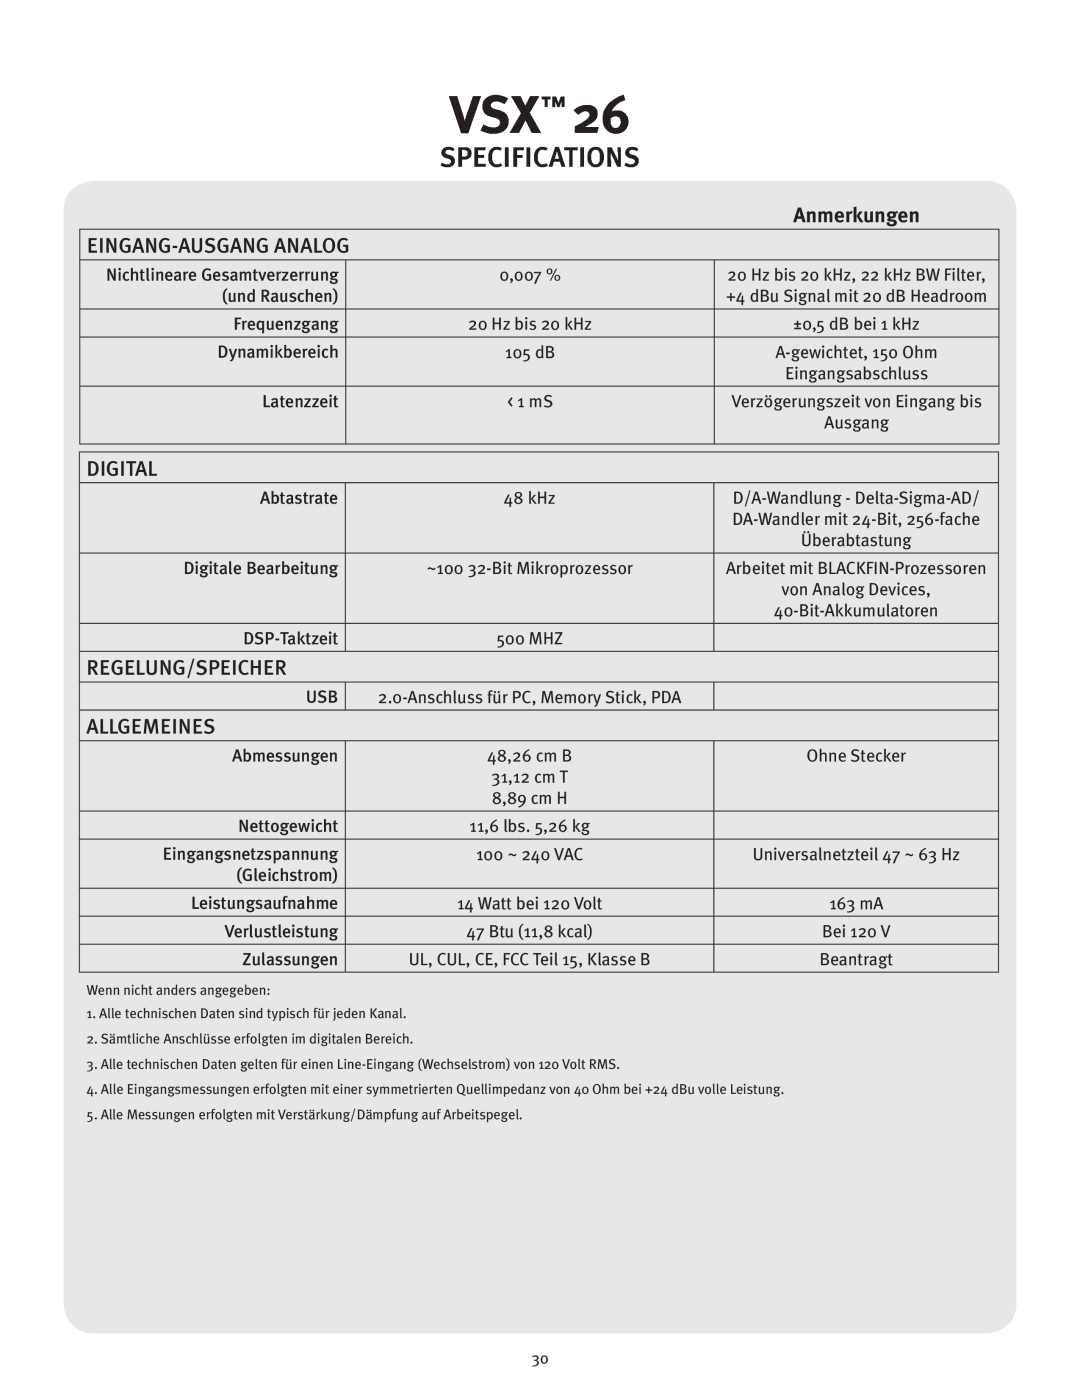 Peavey VSX 26 manual Eingang-Ausganganalog, Regelung/Speicher, Allgemeines, Specifications, Digital, Anmerkungen 